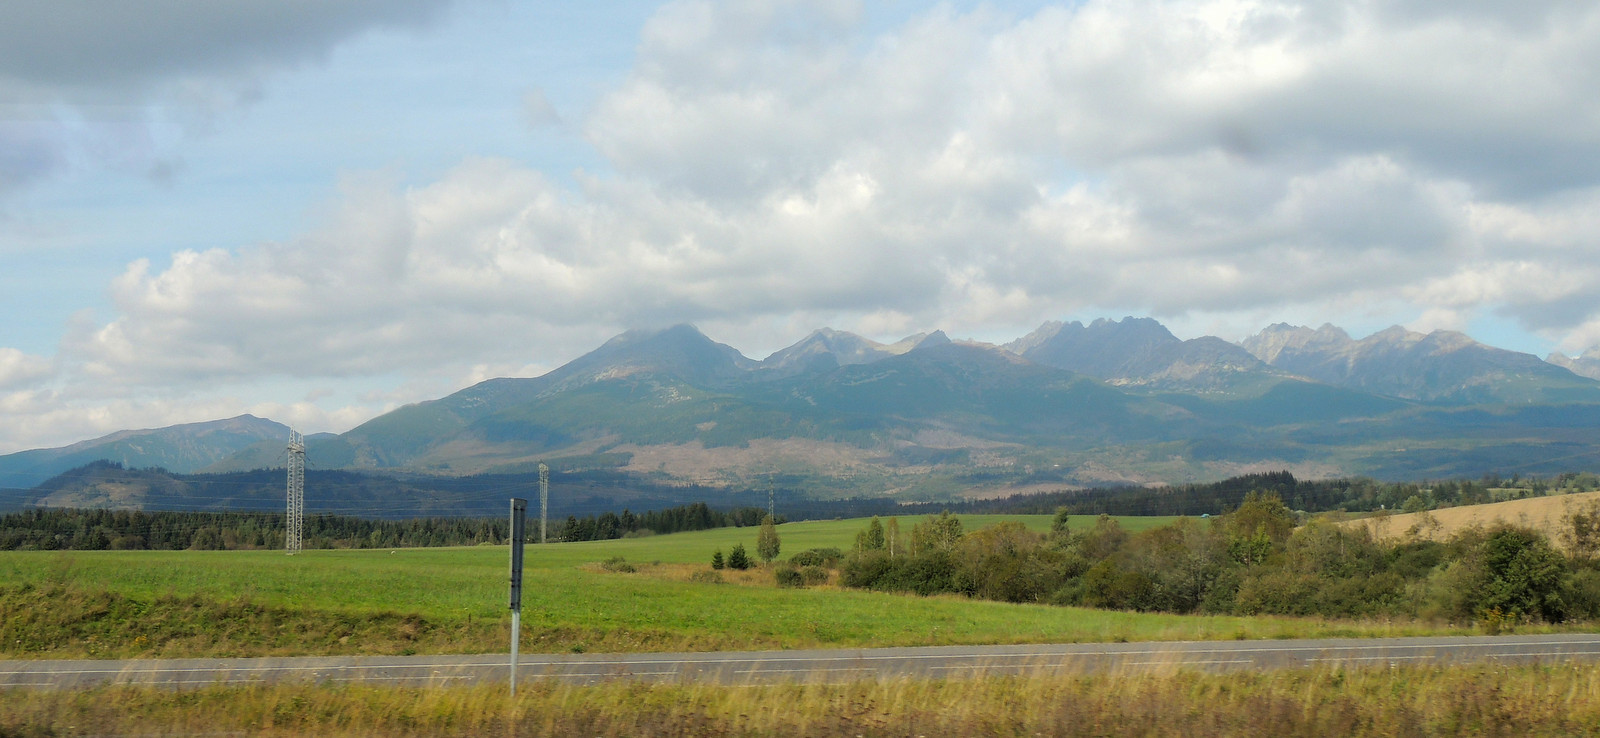 Hohe Tatra vom Zug aus gesehen